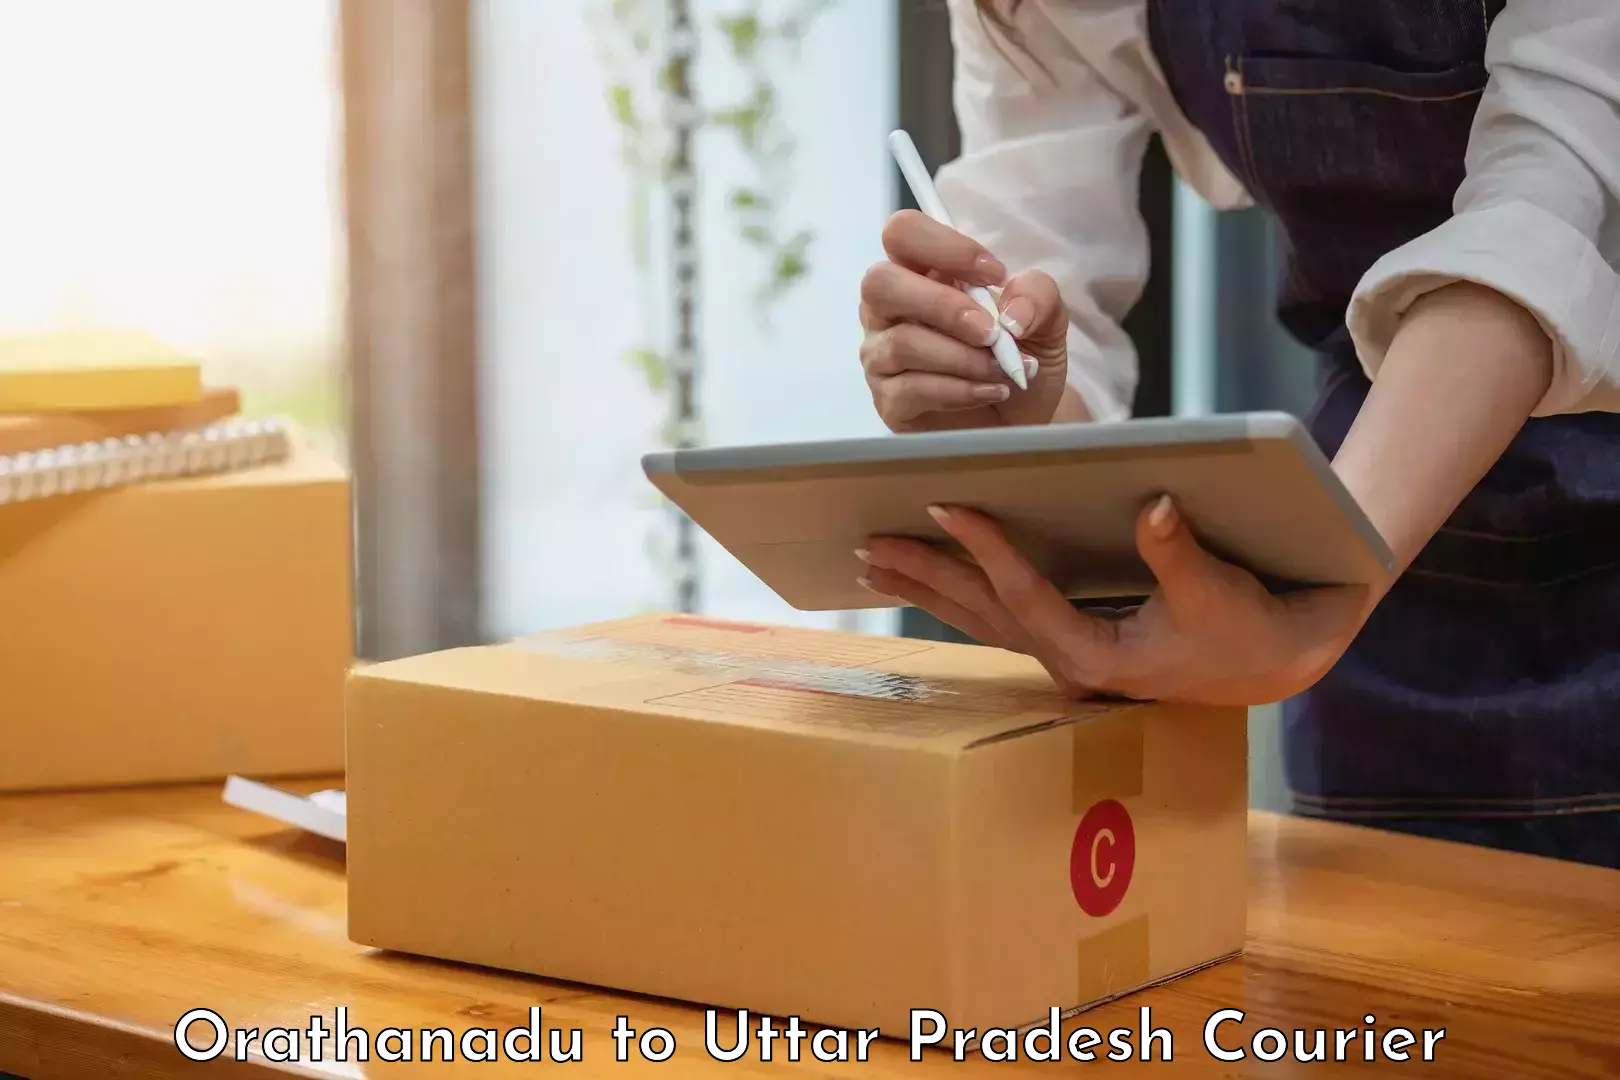 International courier networks Orathanadu to Shohratgarh